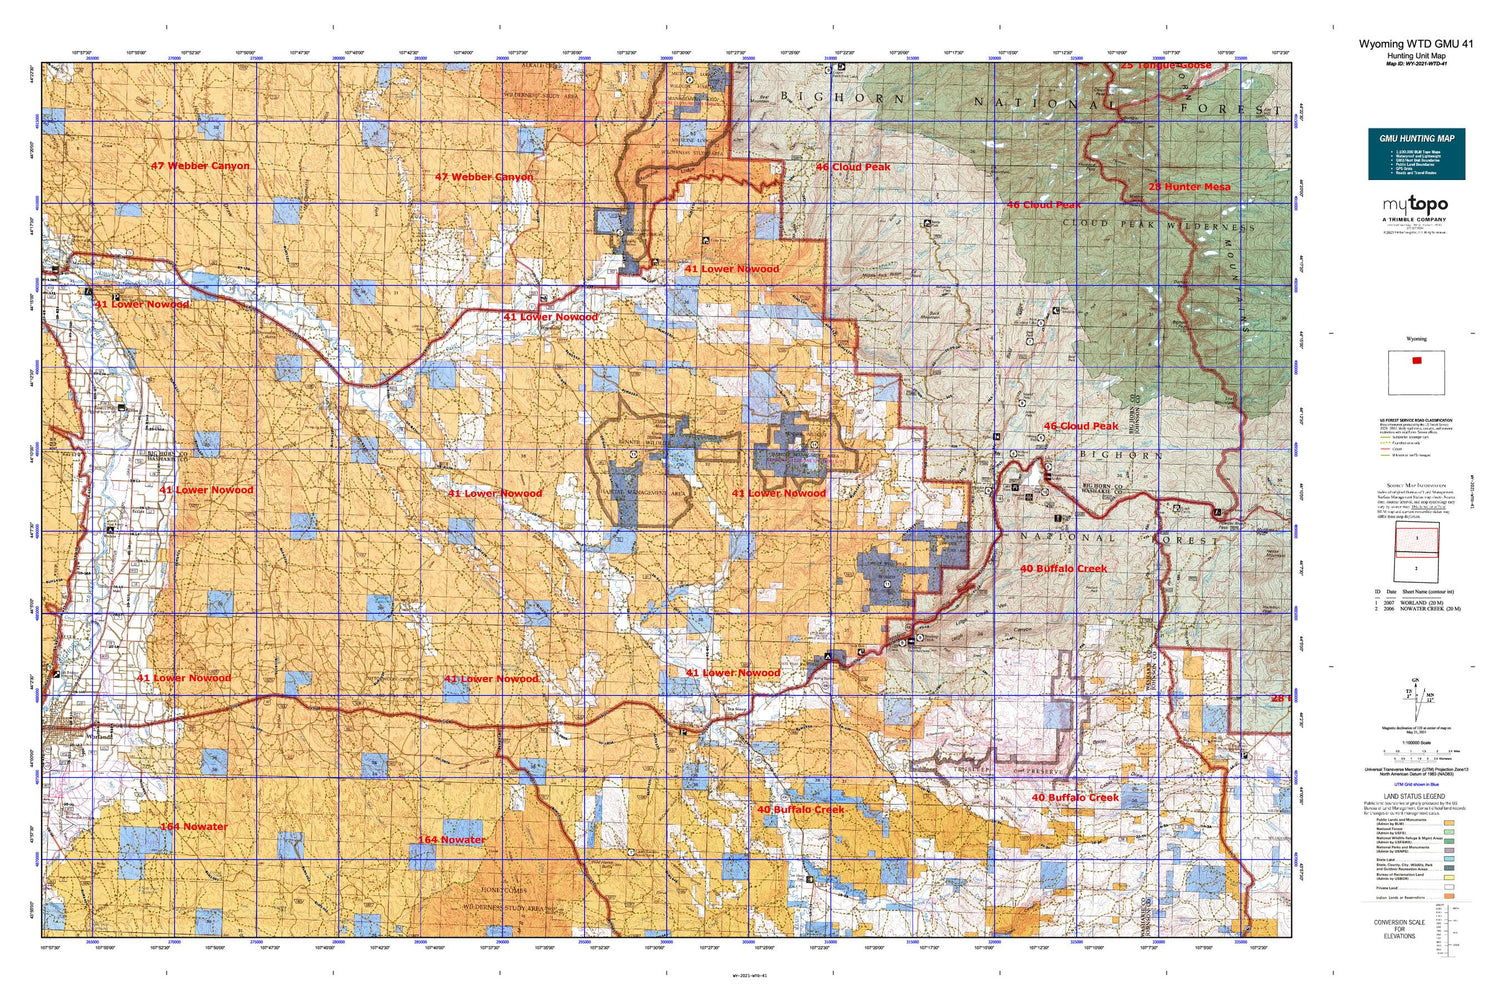 Wyoming Whitetail Deer GMU 41 Map Image